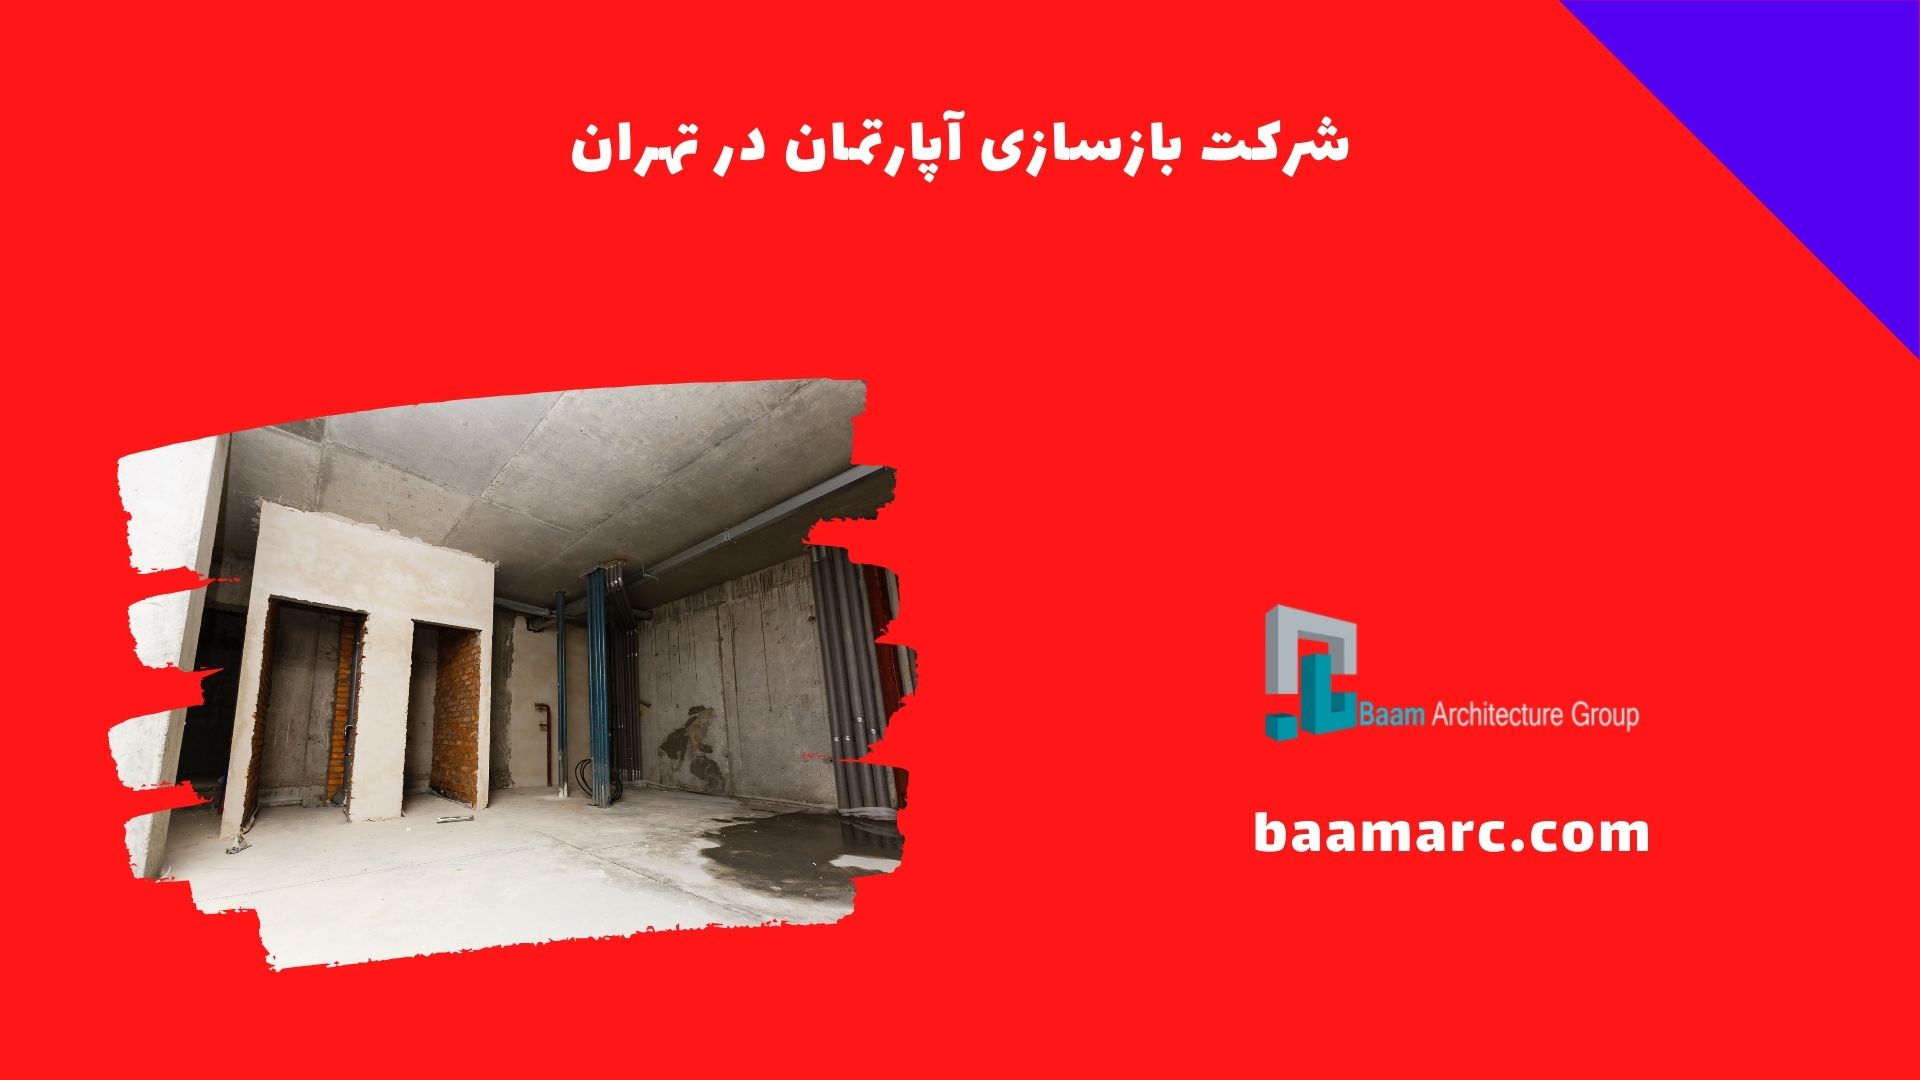 شرکت بازسازی آپارتمان در تهران